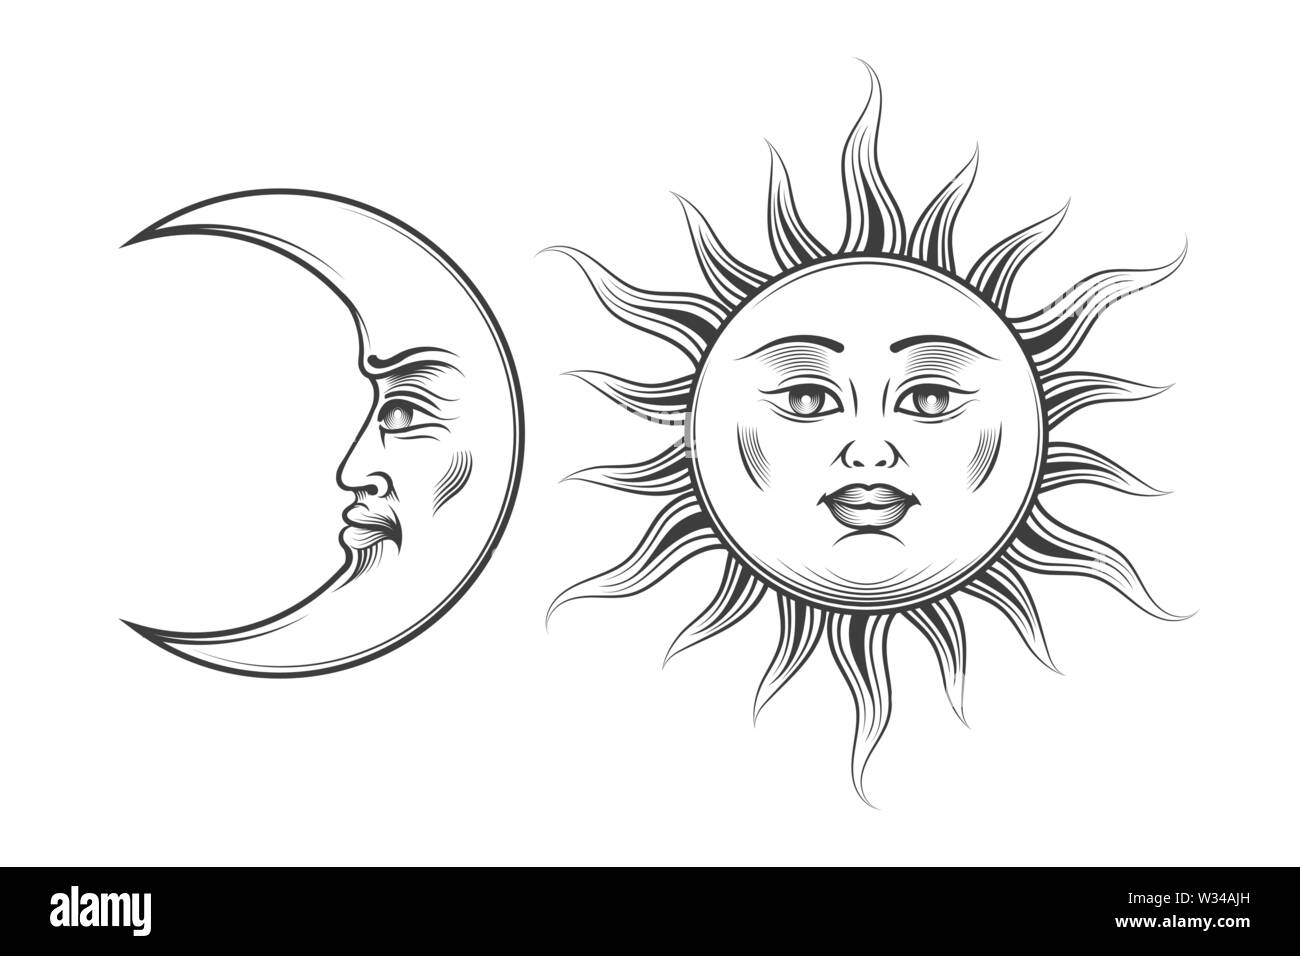 Disegnata a mano il sole e la Luna con cartoon umani volti in stile di incisione. Esotric medievale astrologia simboli. Illustrazione Vettoriale. Illustrazione Vettoriale